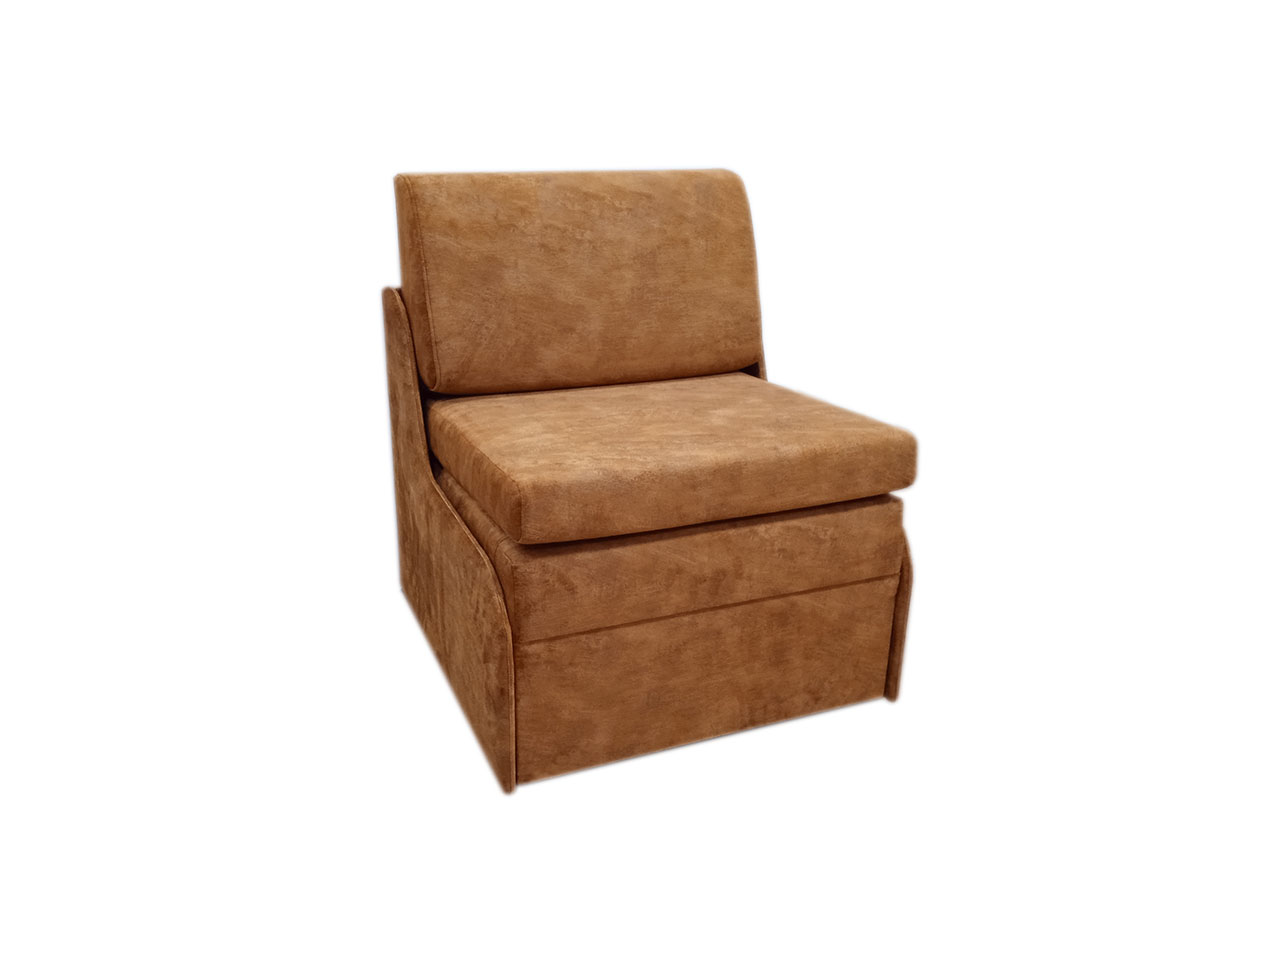 Малогабаритное кресло-кровать Танго-4 Д-70 без боковин и глубиной 75 см. Габаритный размер 75 х 75. Спальное место 70 х 185 или 190 см